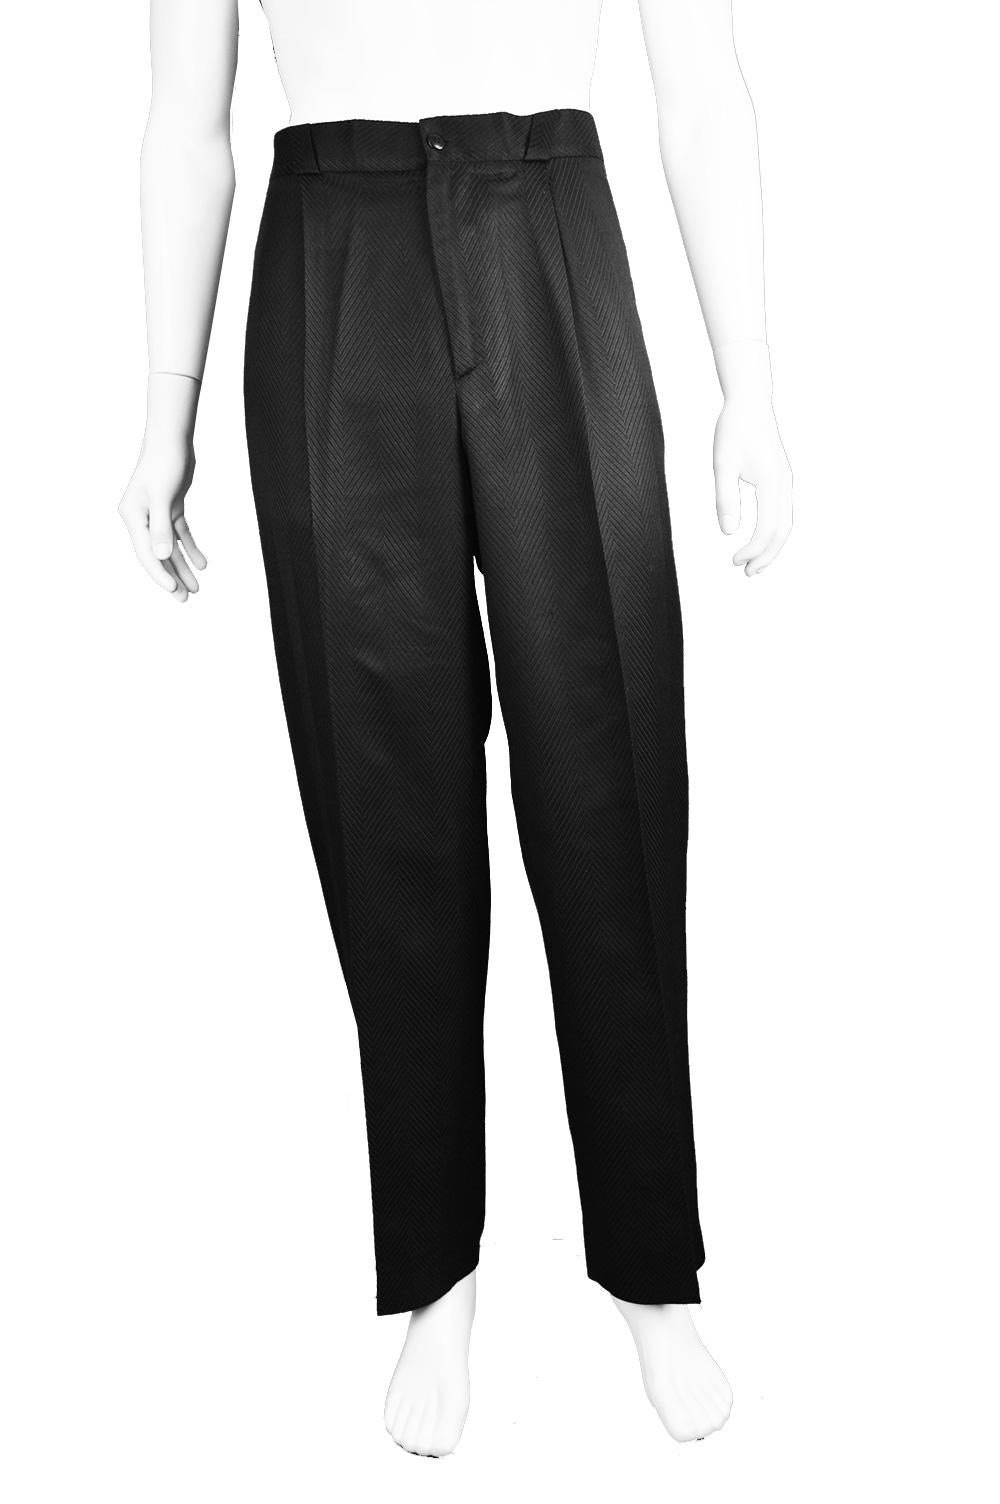 Gianni Versace Men's Black 100% Silk Jacquard 2 Piece Vintage Suit, 1990s For Sale 5